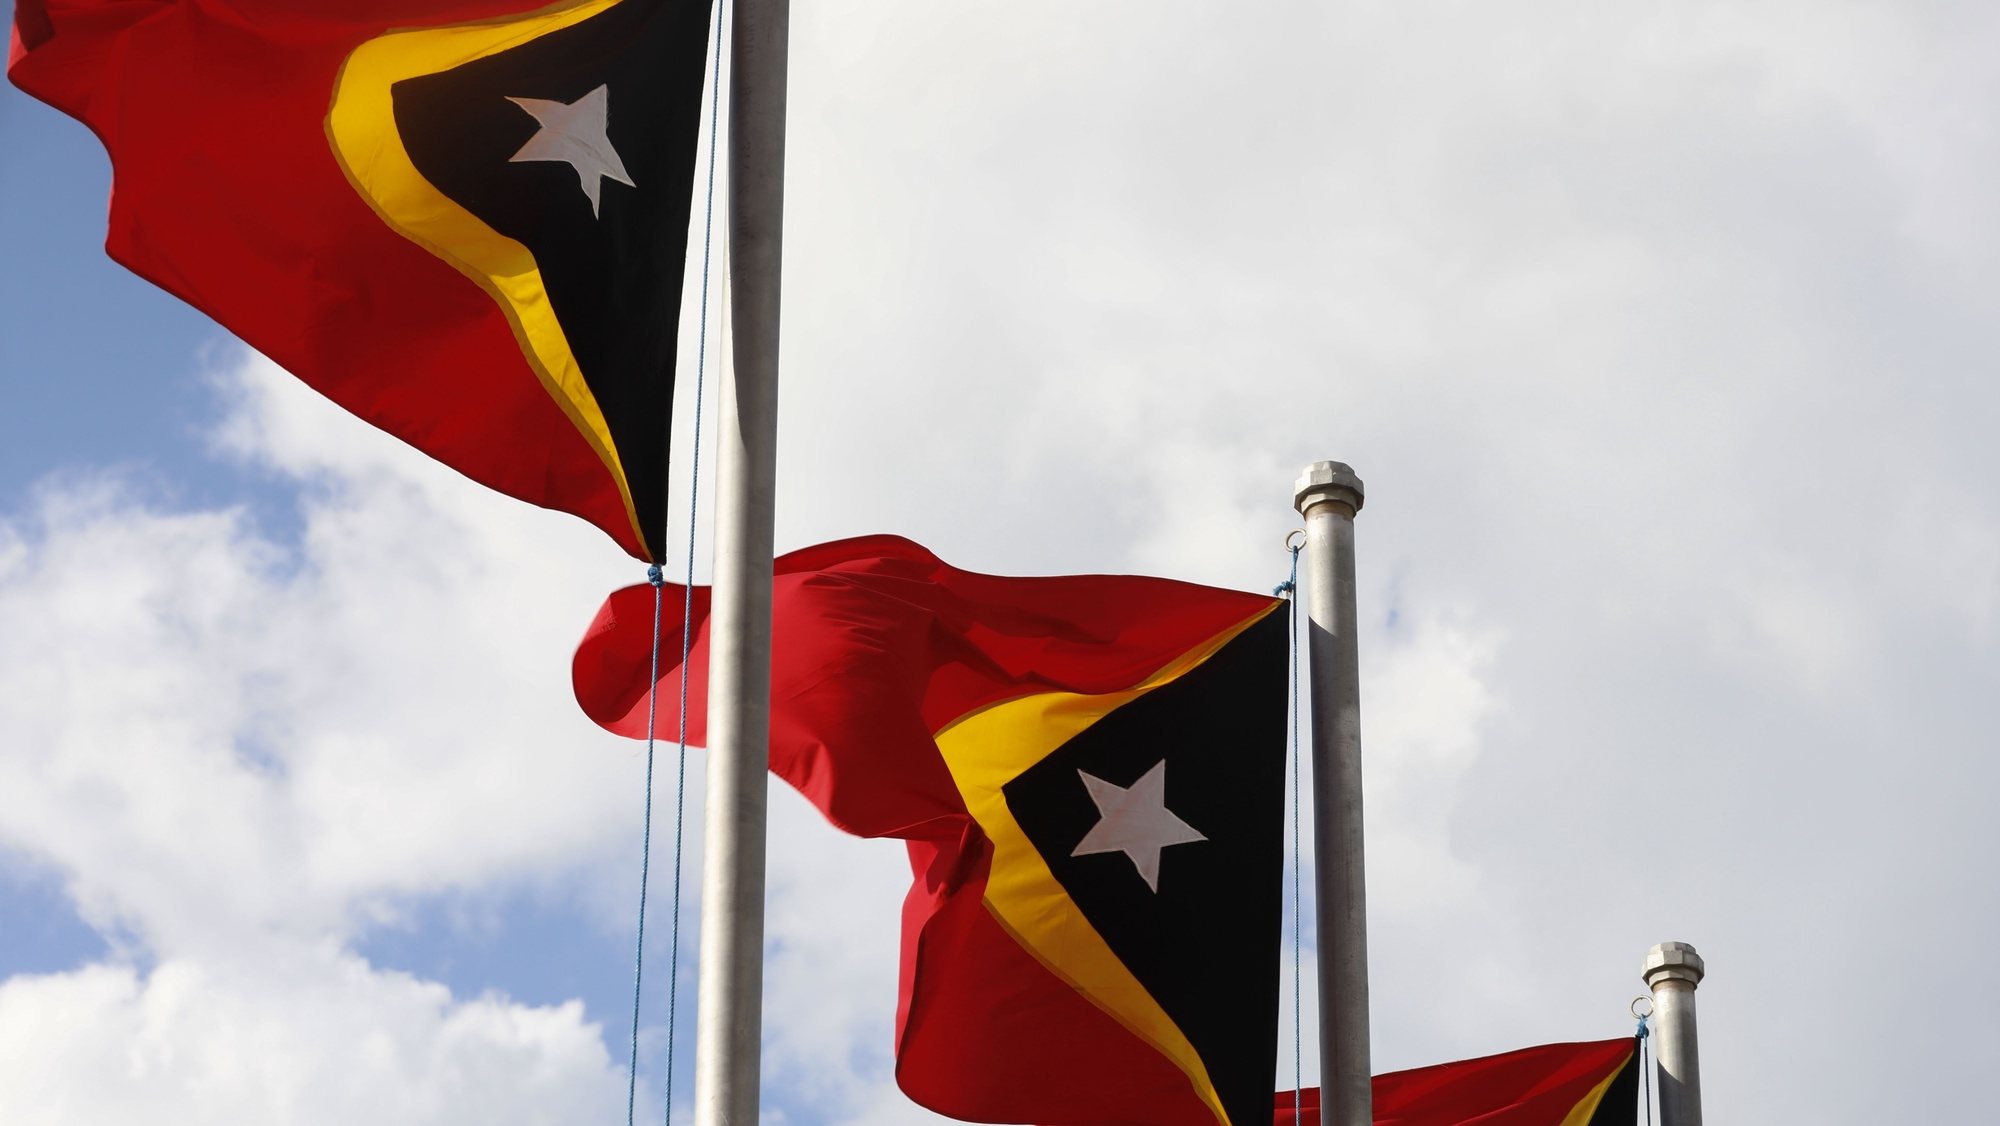 Bandeiras de Timor em Dili, Timor-Leste, 16 de maio de 2022.  ANTÓNIO COTRIM/LUSA